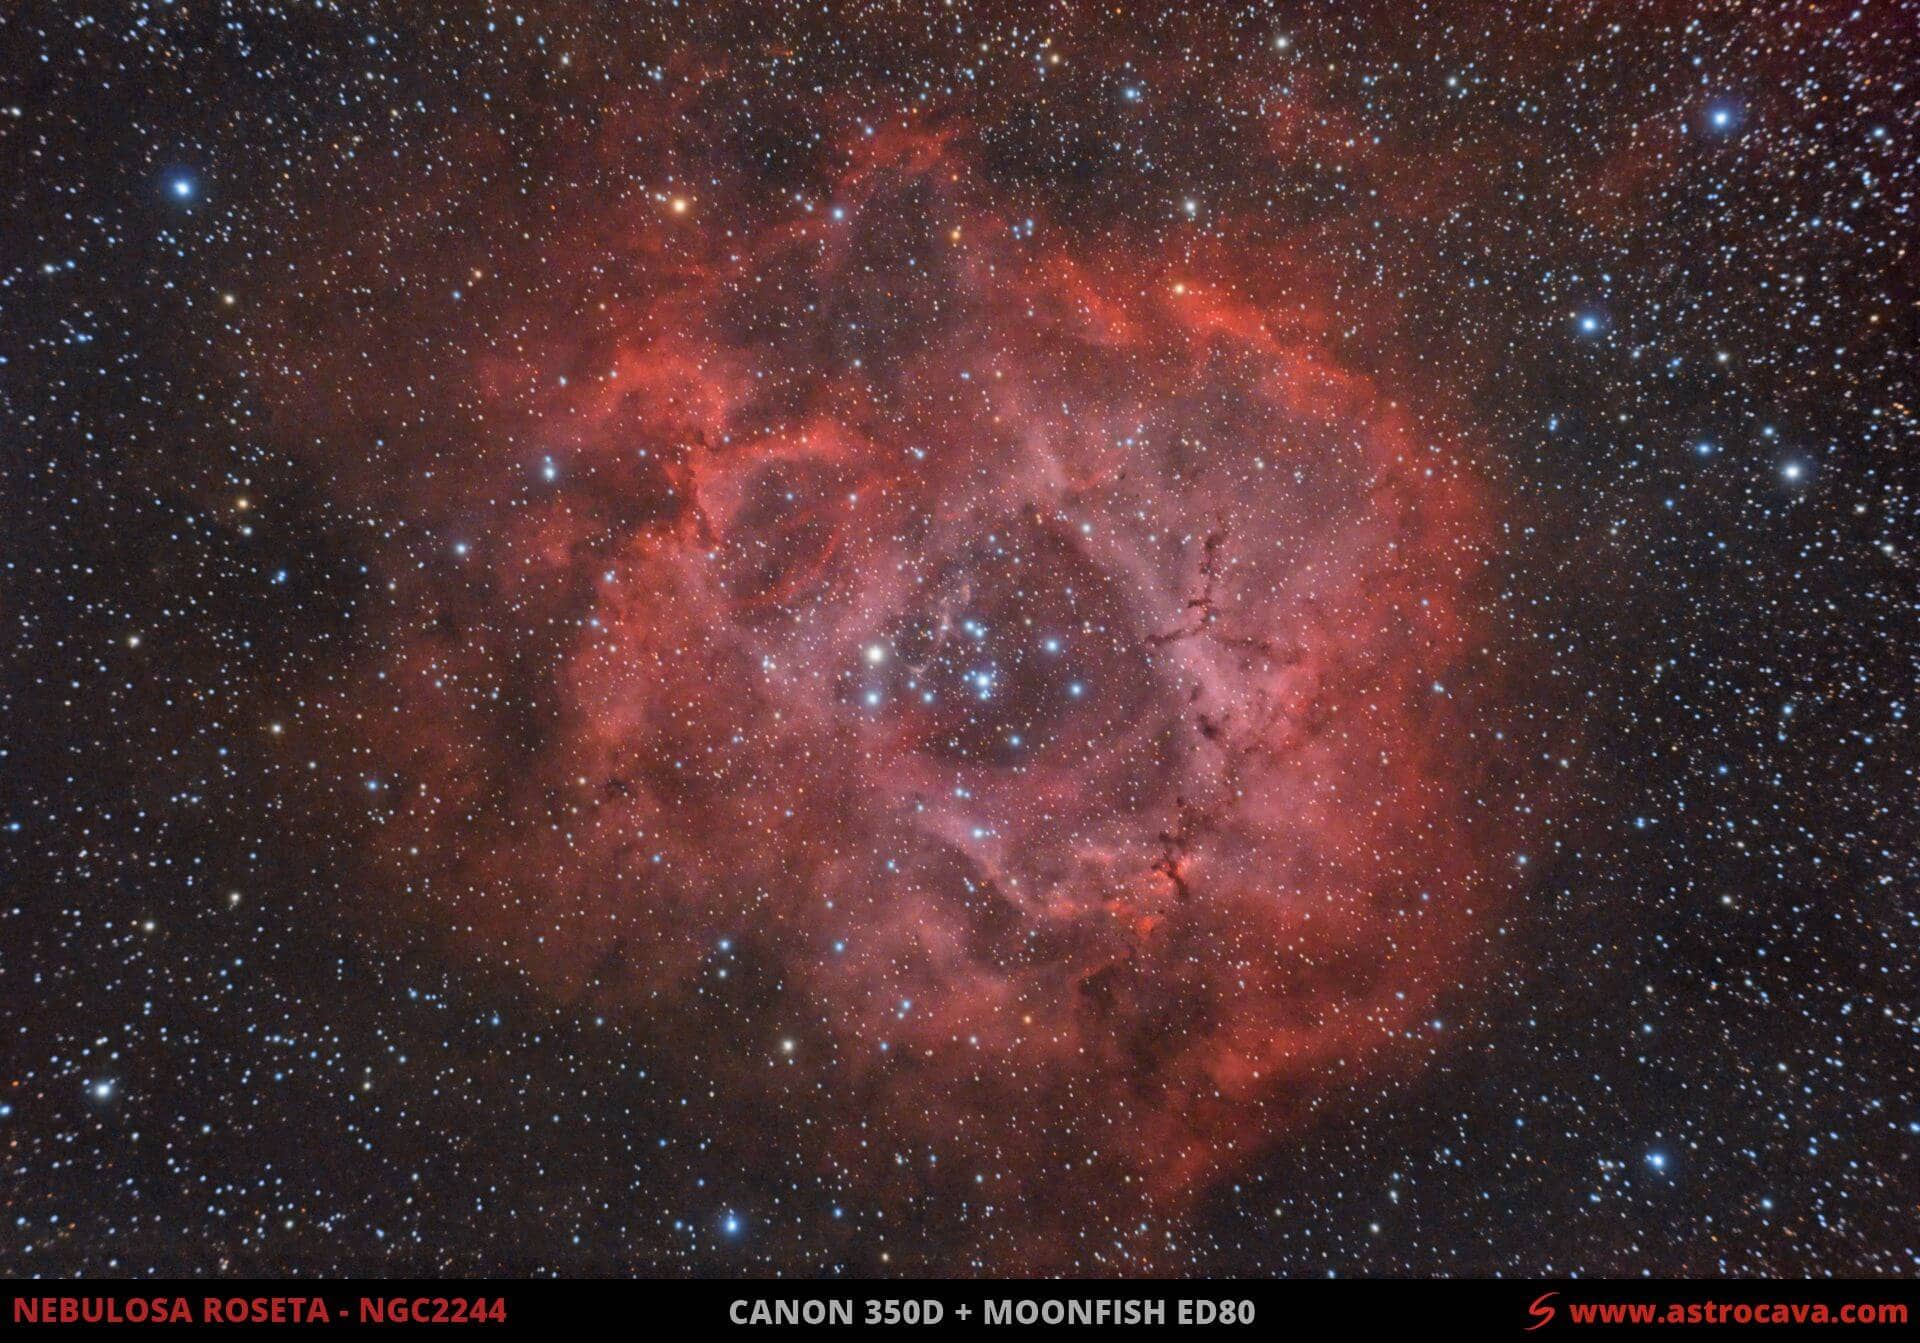 Nebulosa del Rosetón (NGC2244) en Unicornio. Versión año 2009.